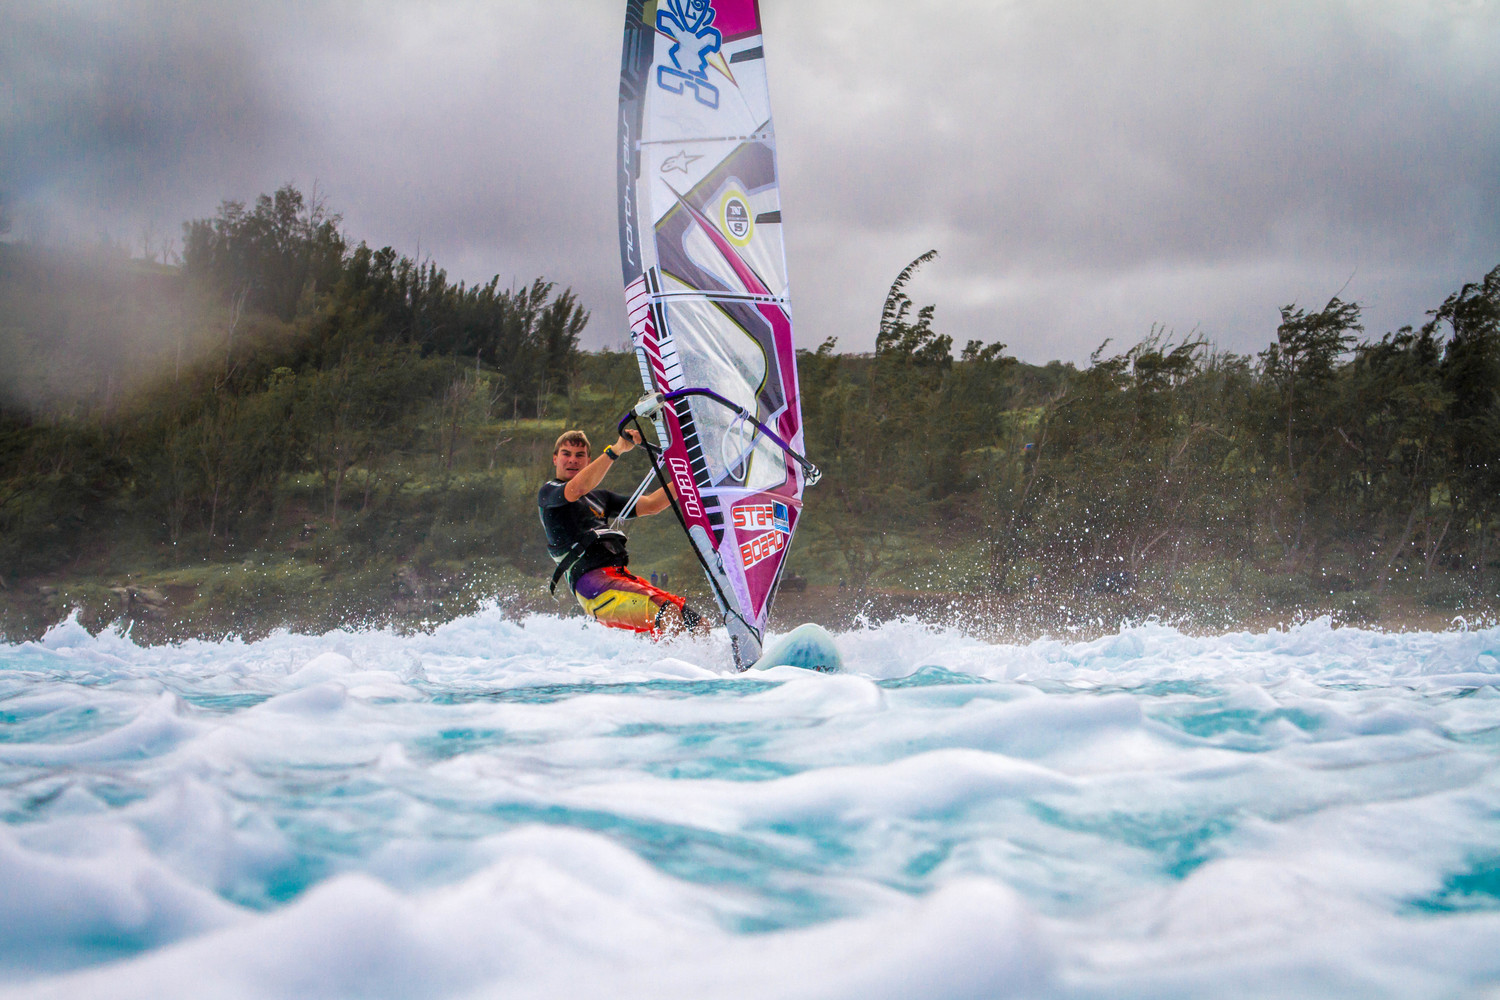 Zane Schweitzer windsurfing - 2014 SUP Champion Stand up paddle maui aloha surf